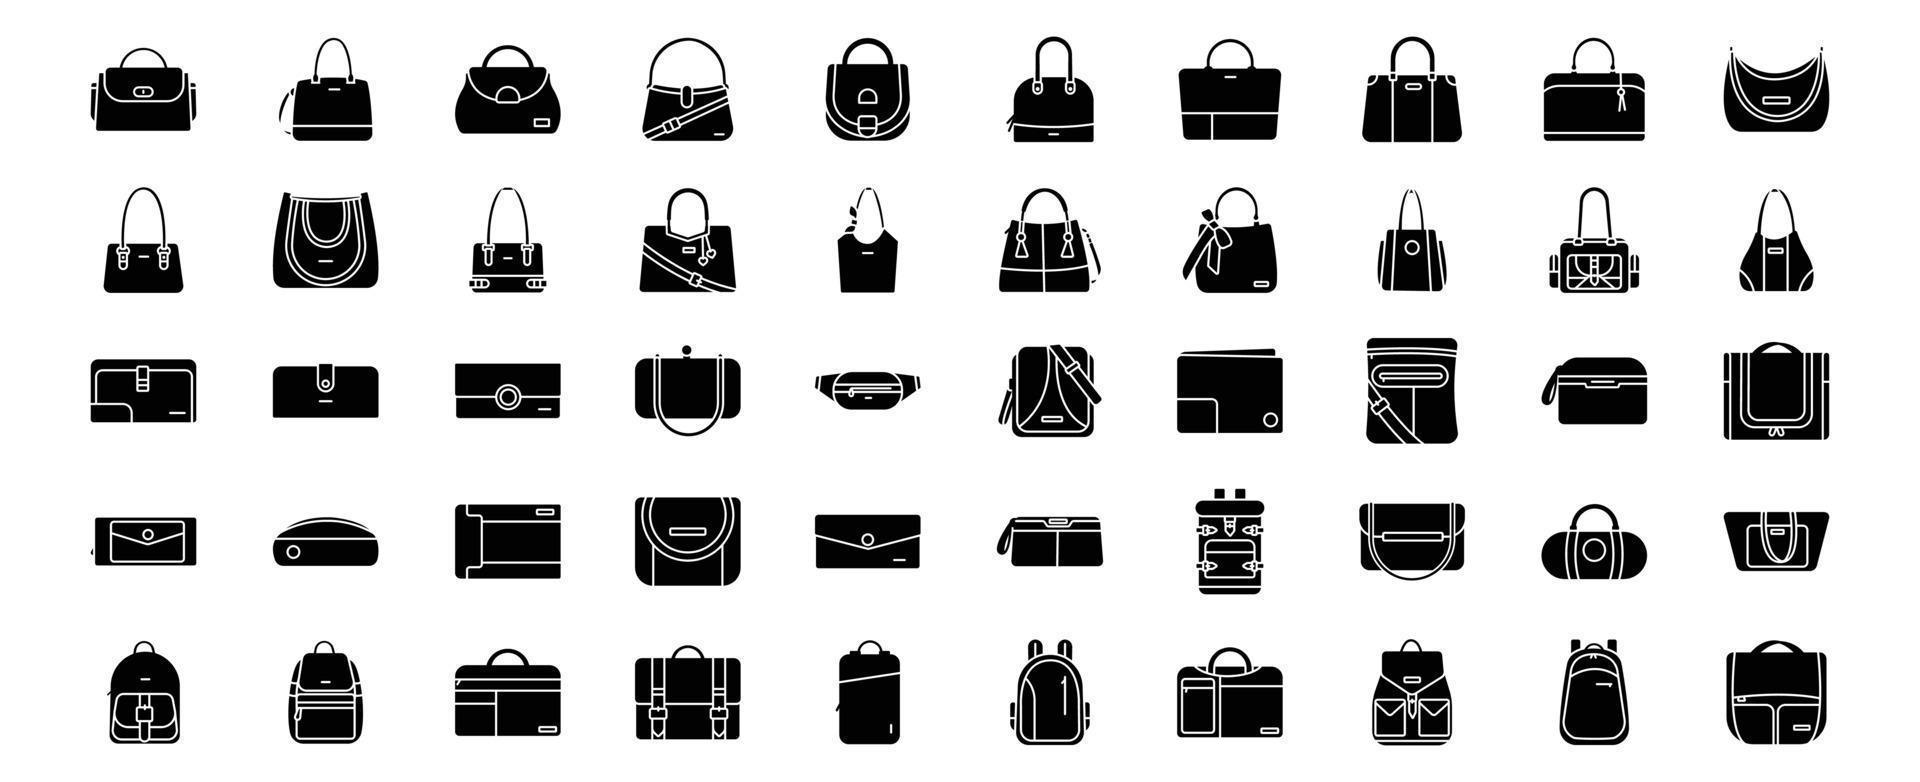 verzameling van pictogrammen verwant naar Tassen en tas, inclusief pictogrammen Leuk vinden tas, handtas en meer. vector illustraties, pixel perfect reeks